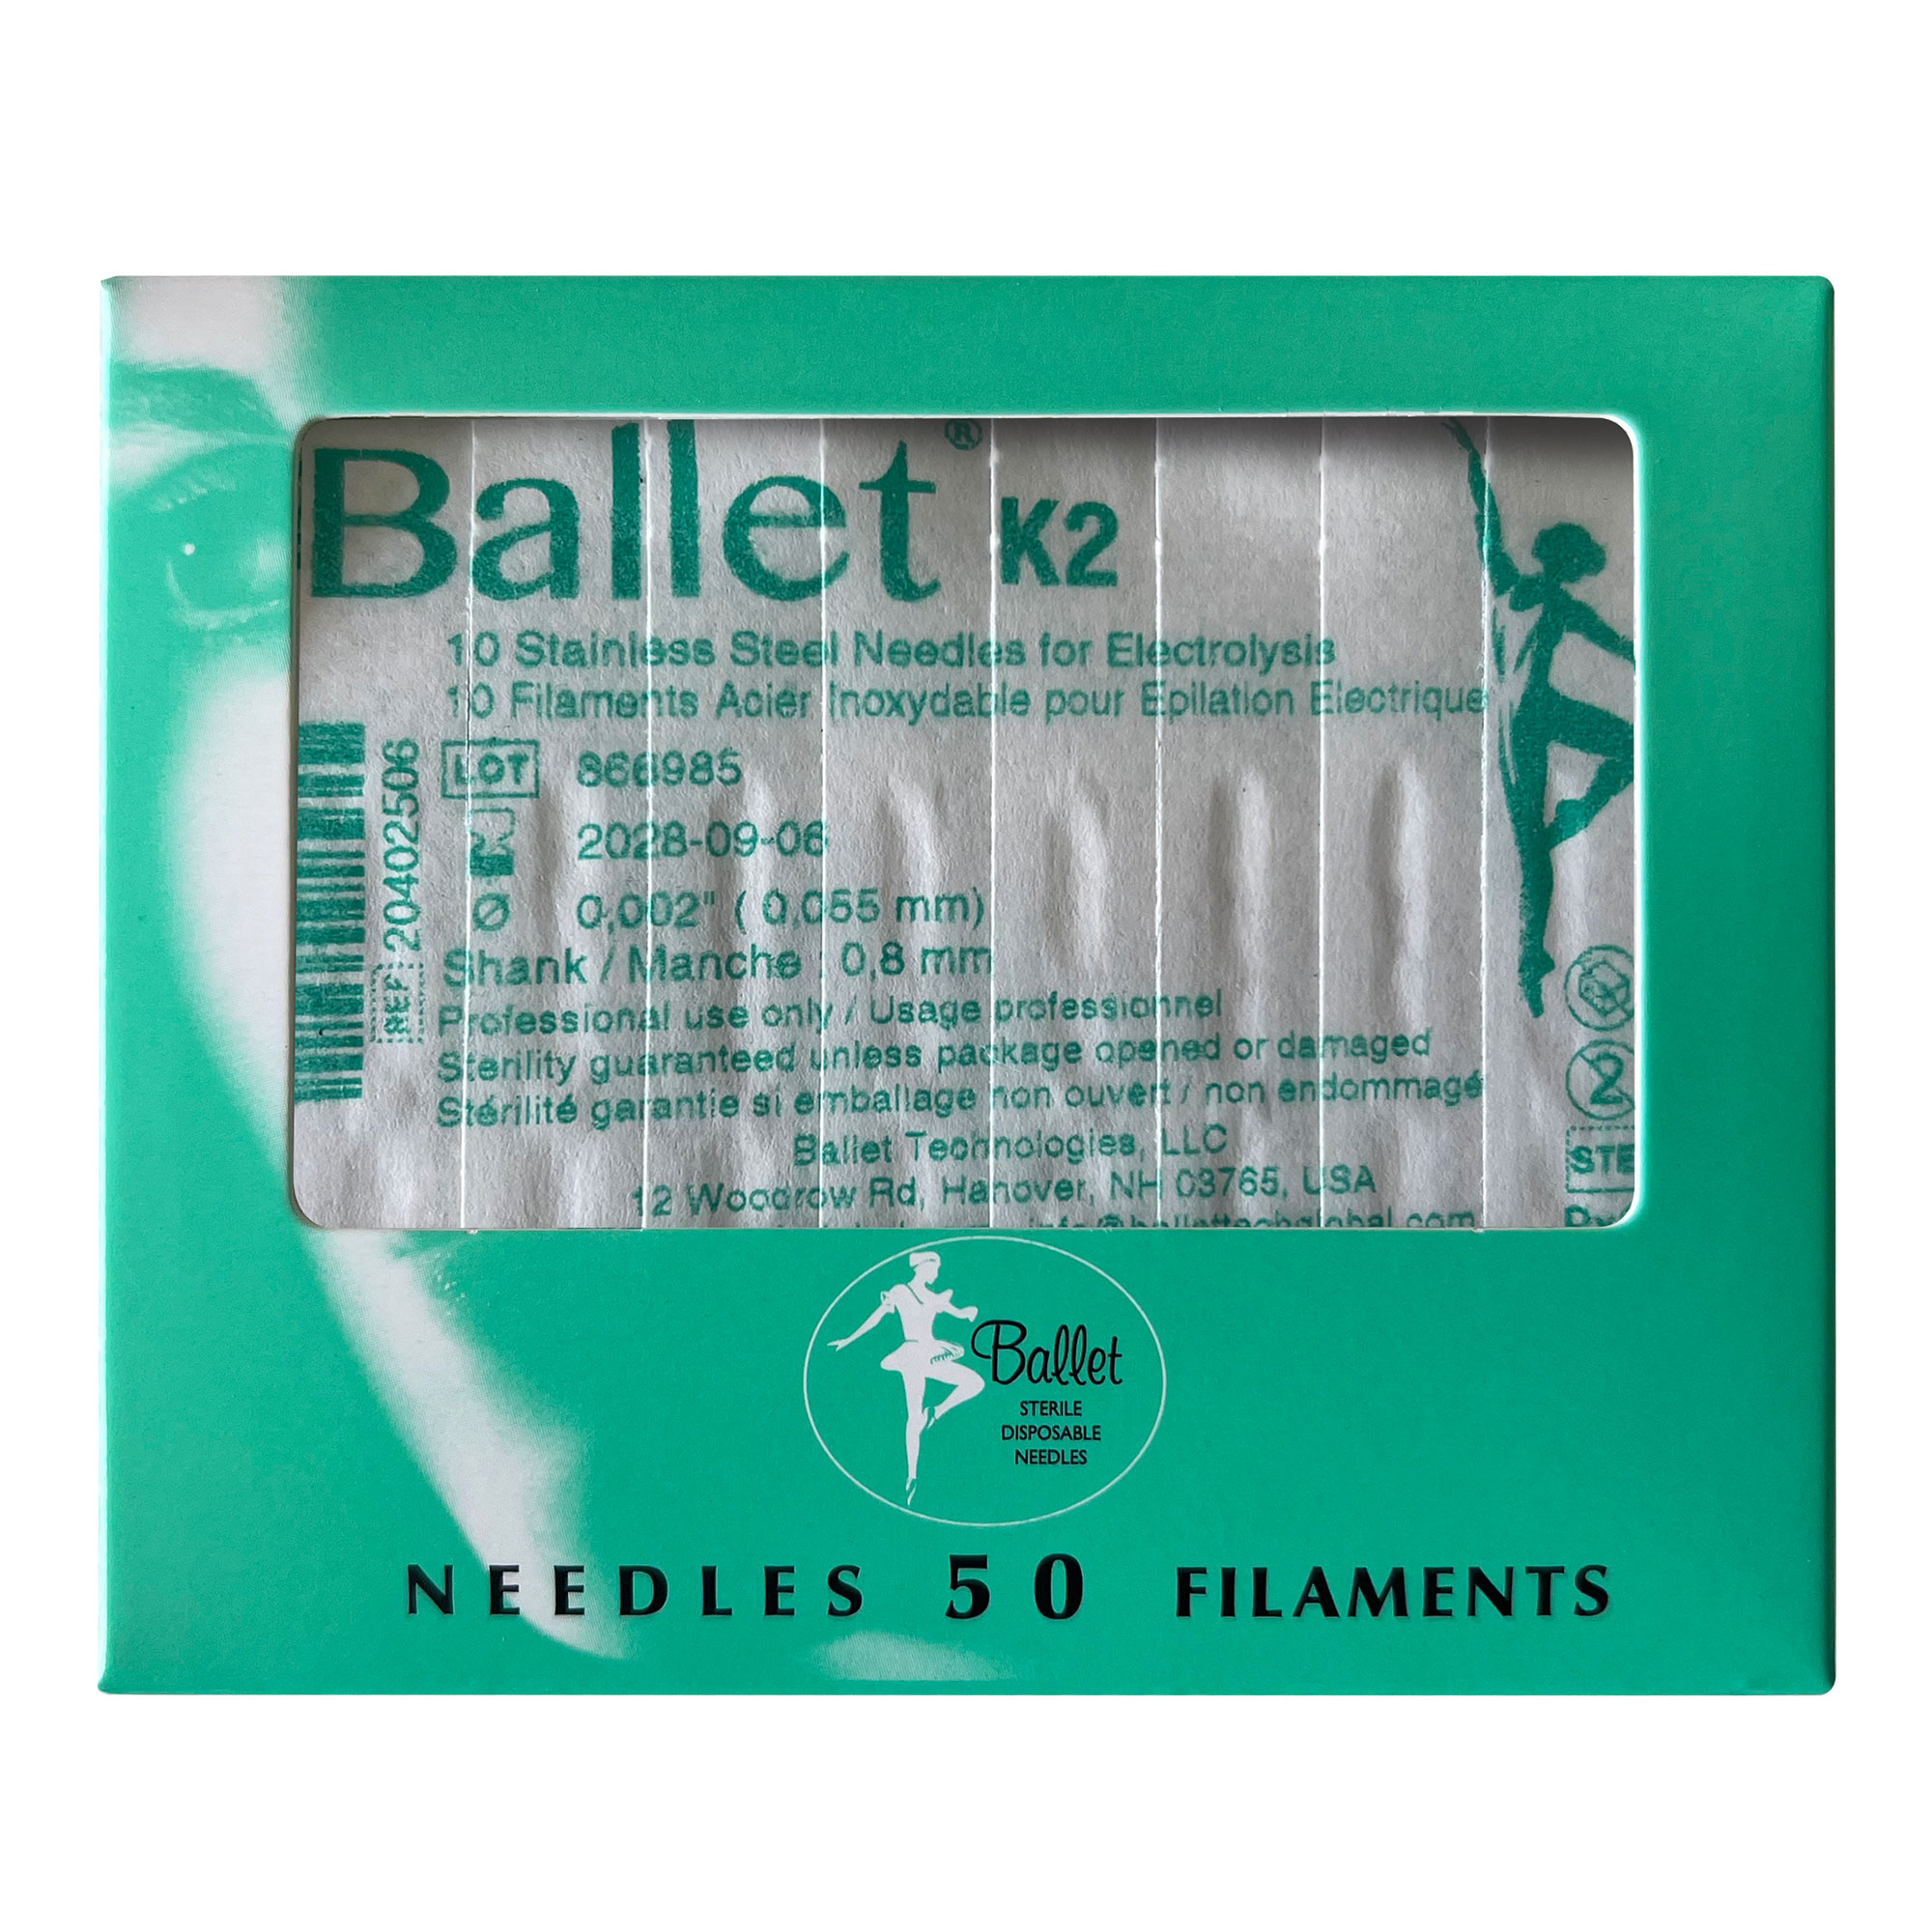 Ballet ago Acciaio Inox sterile per epilazione 0,055 mm